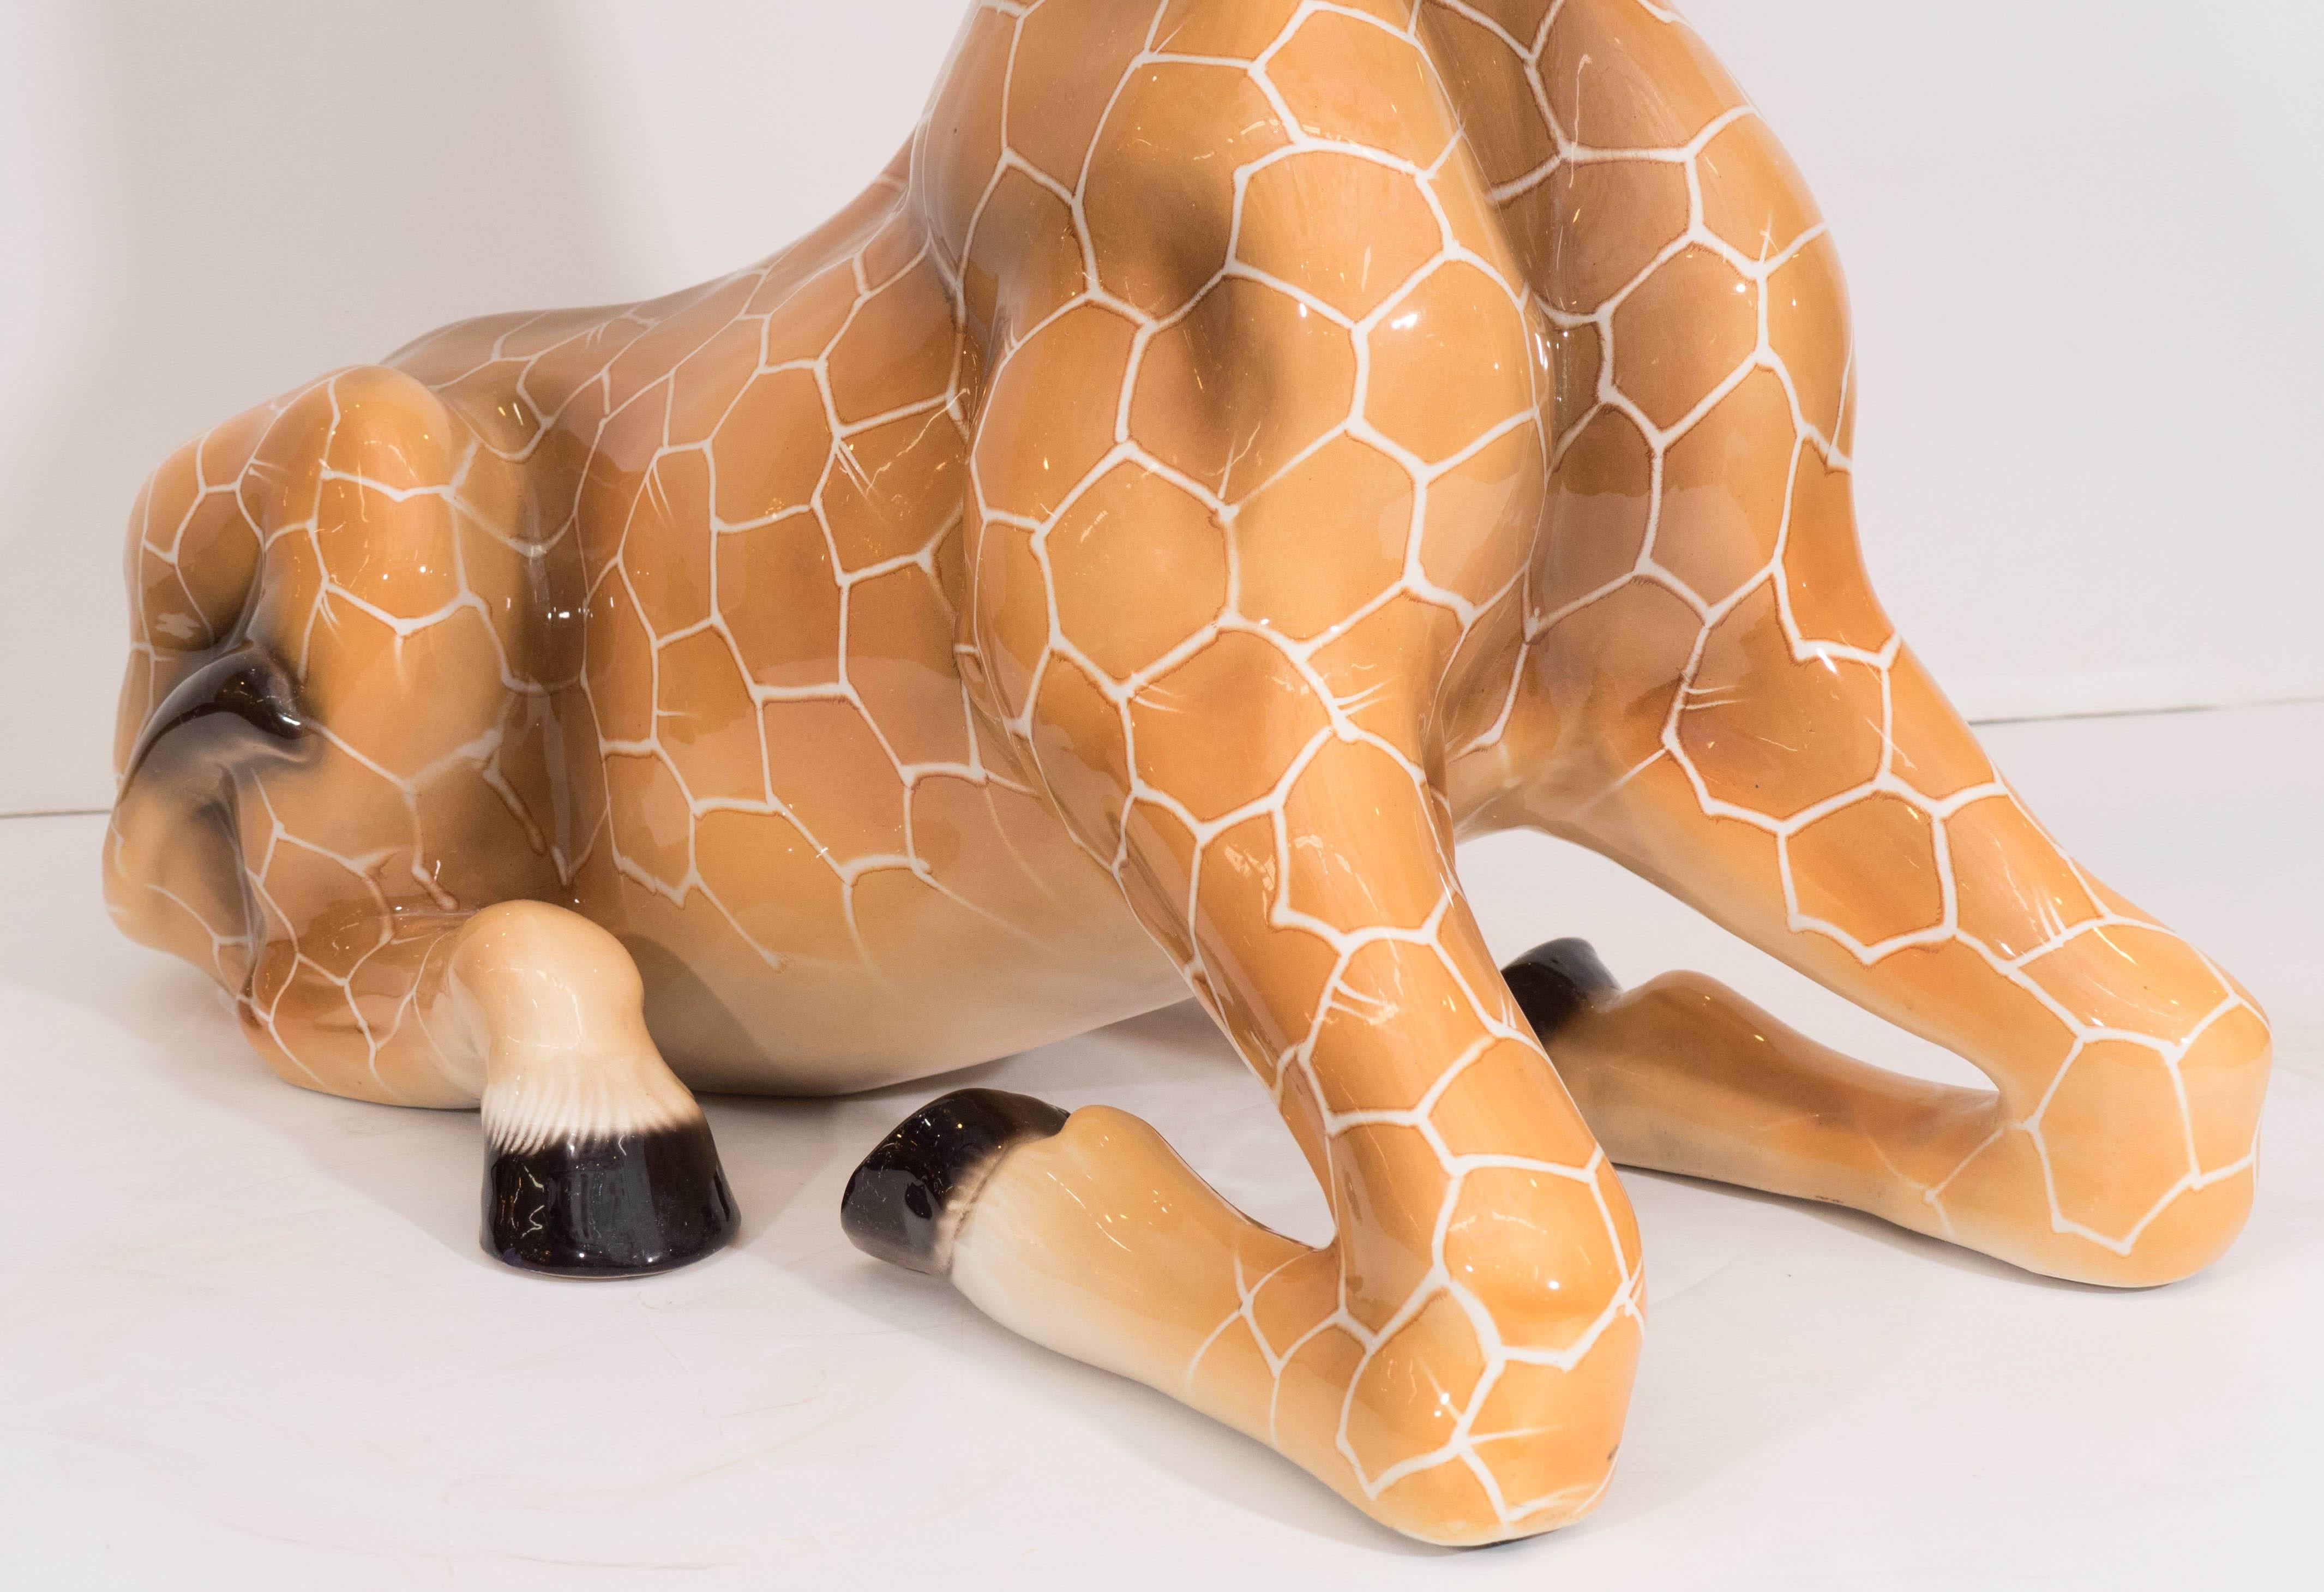 Midcentury Italian Ceramic Giraffe Sculpture 1